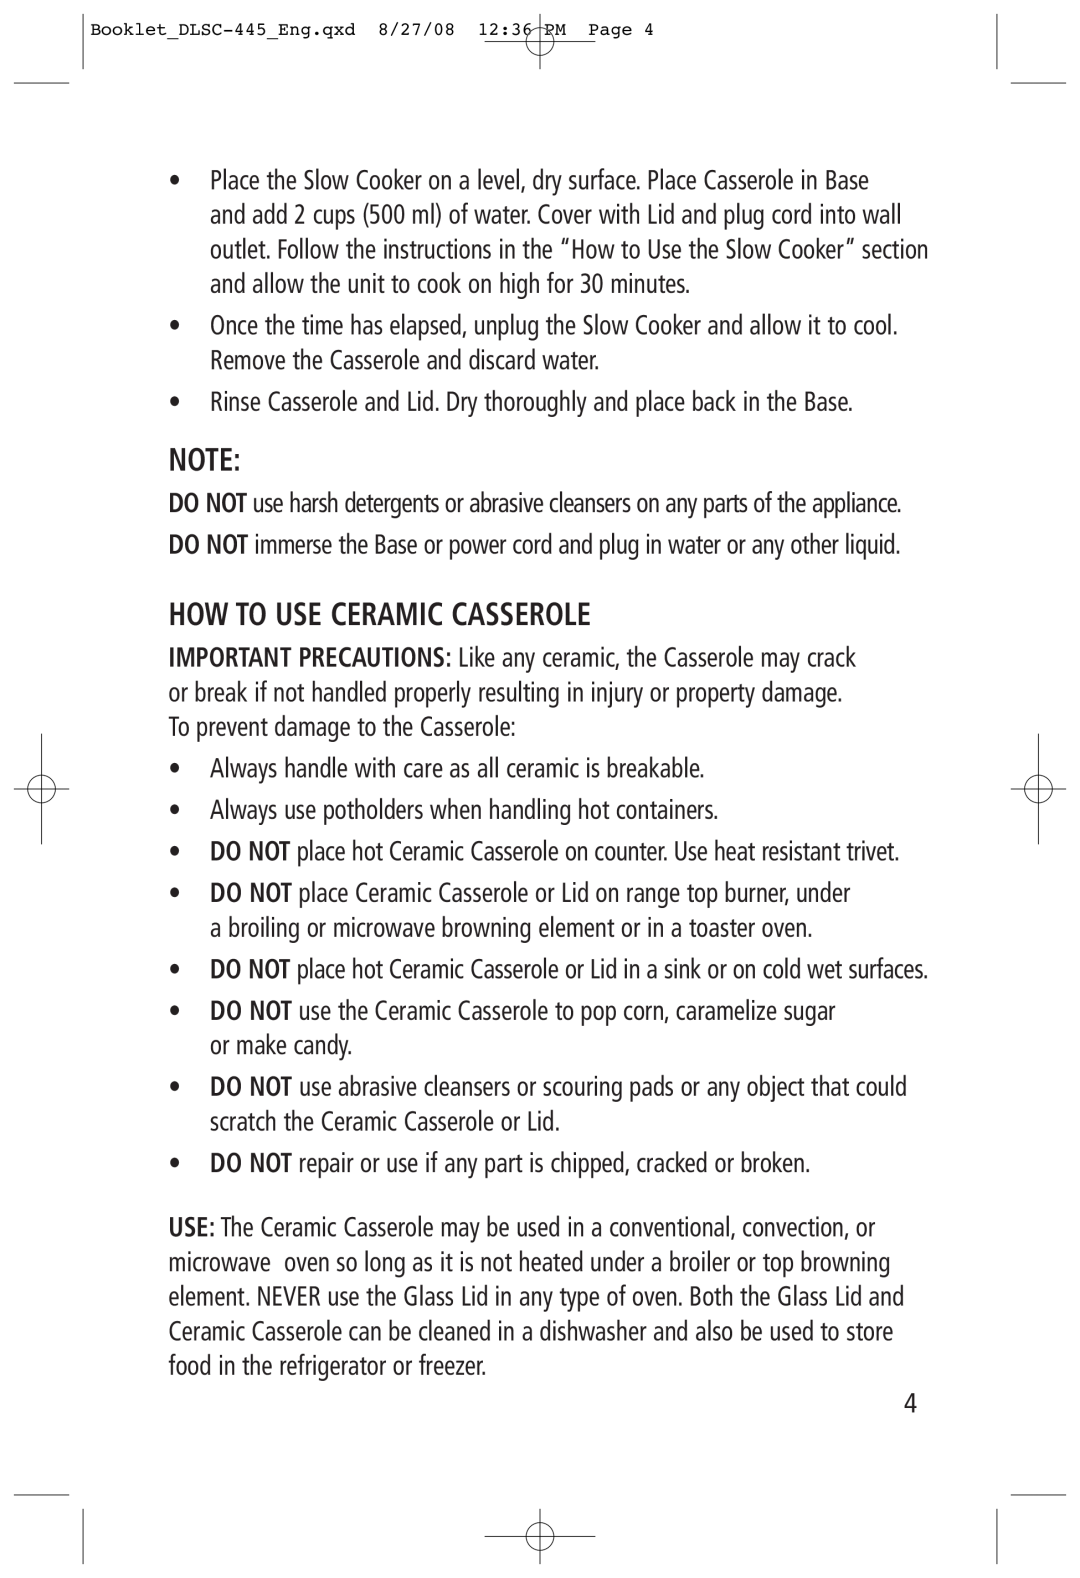 Toastess DLSC-445 manual How To Use Ceramic Casserole 